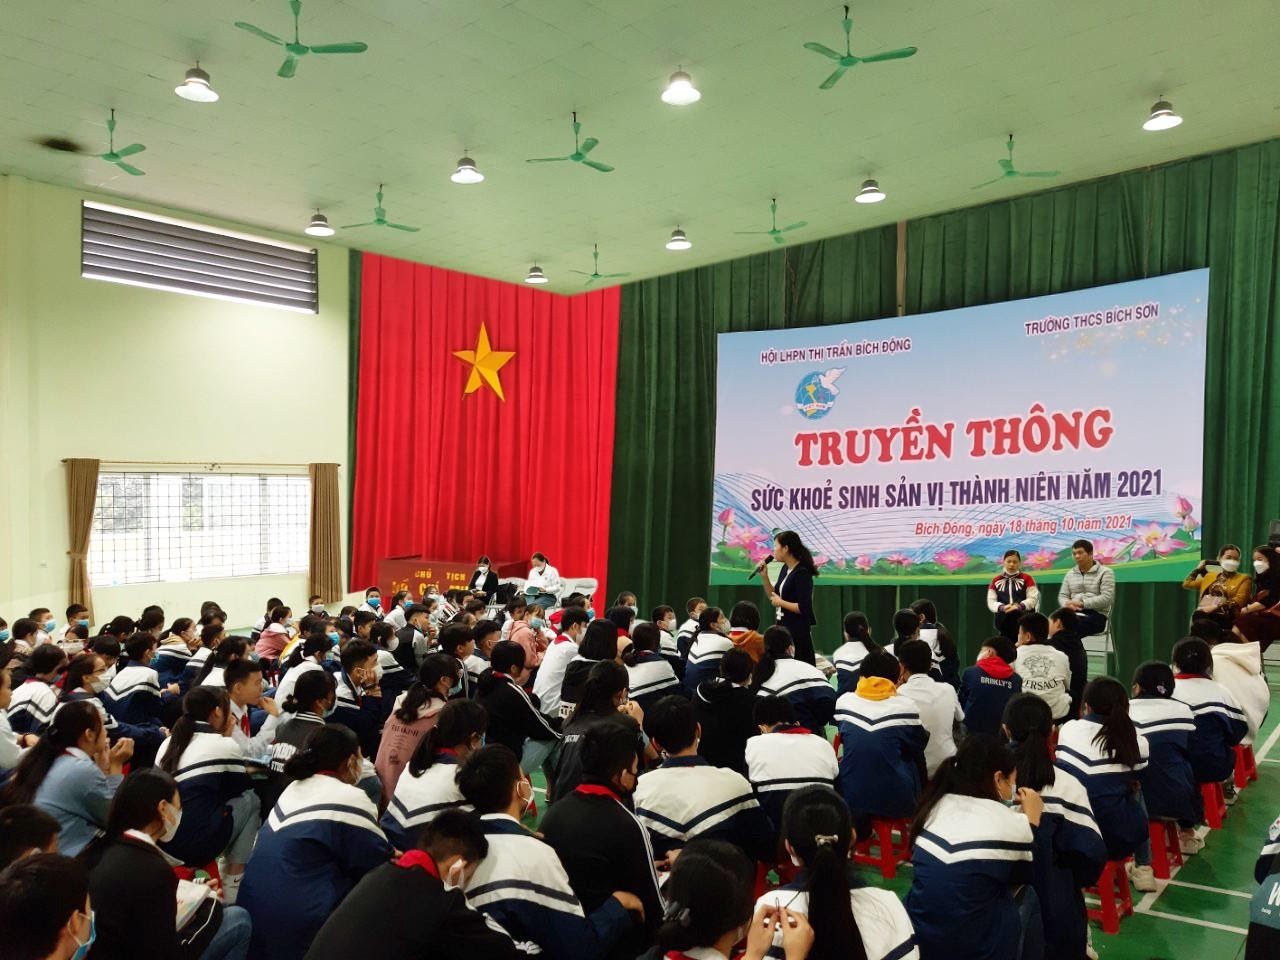 Việt Yên: Tổ chức hội nghị truyền thông về Chăm sóc sức khỏe sinh sản  Vị thành niên/thanh niên...